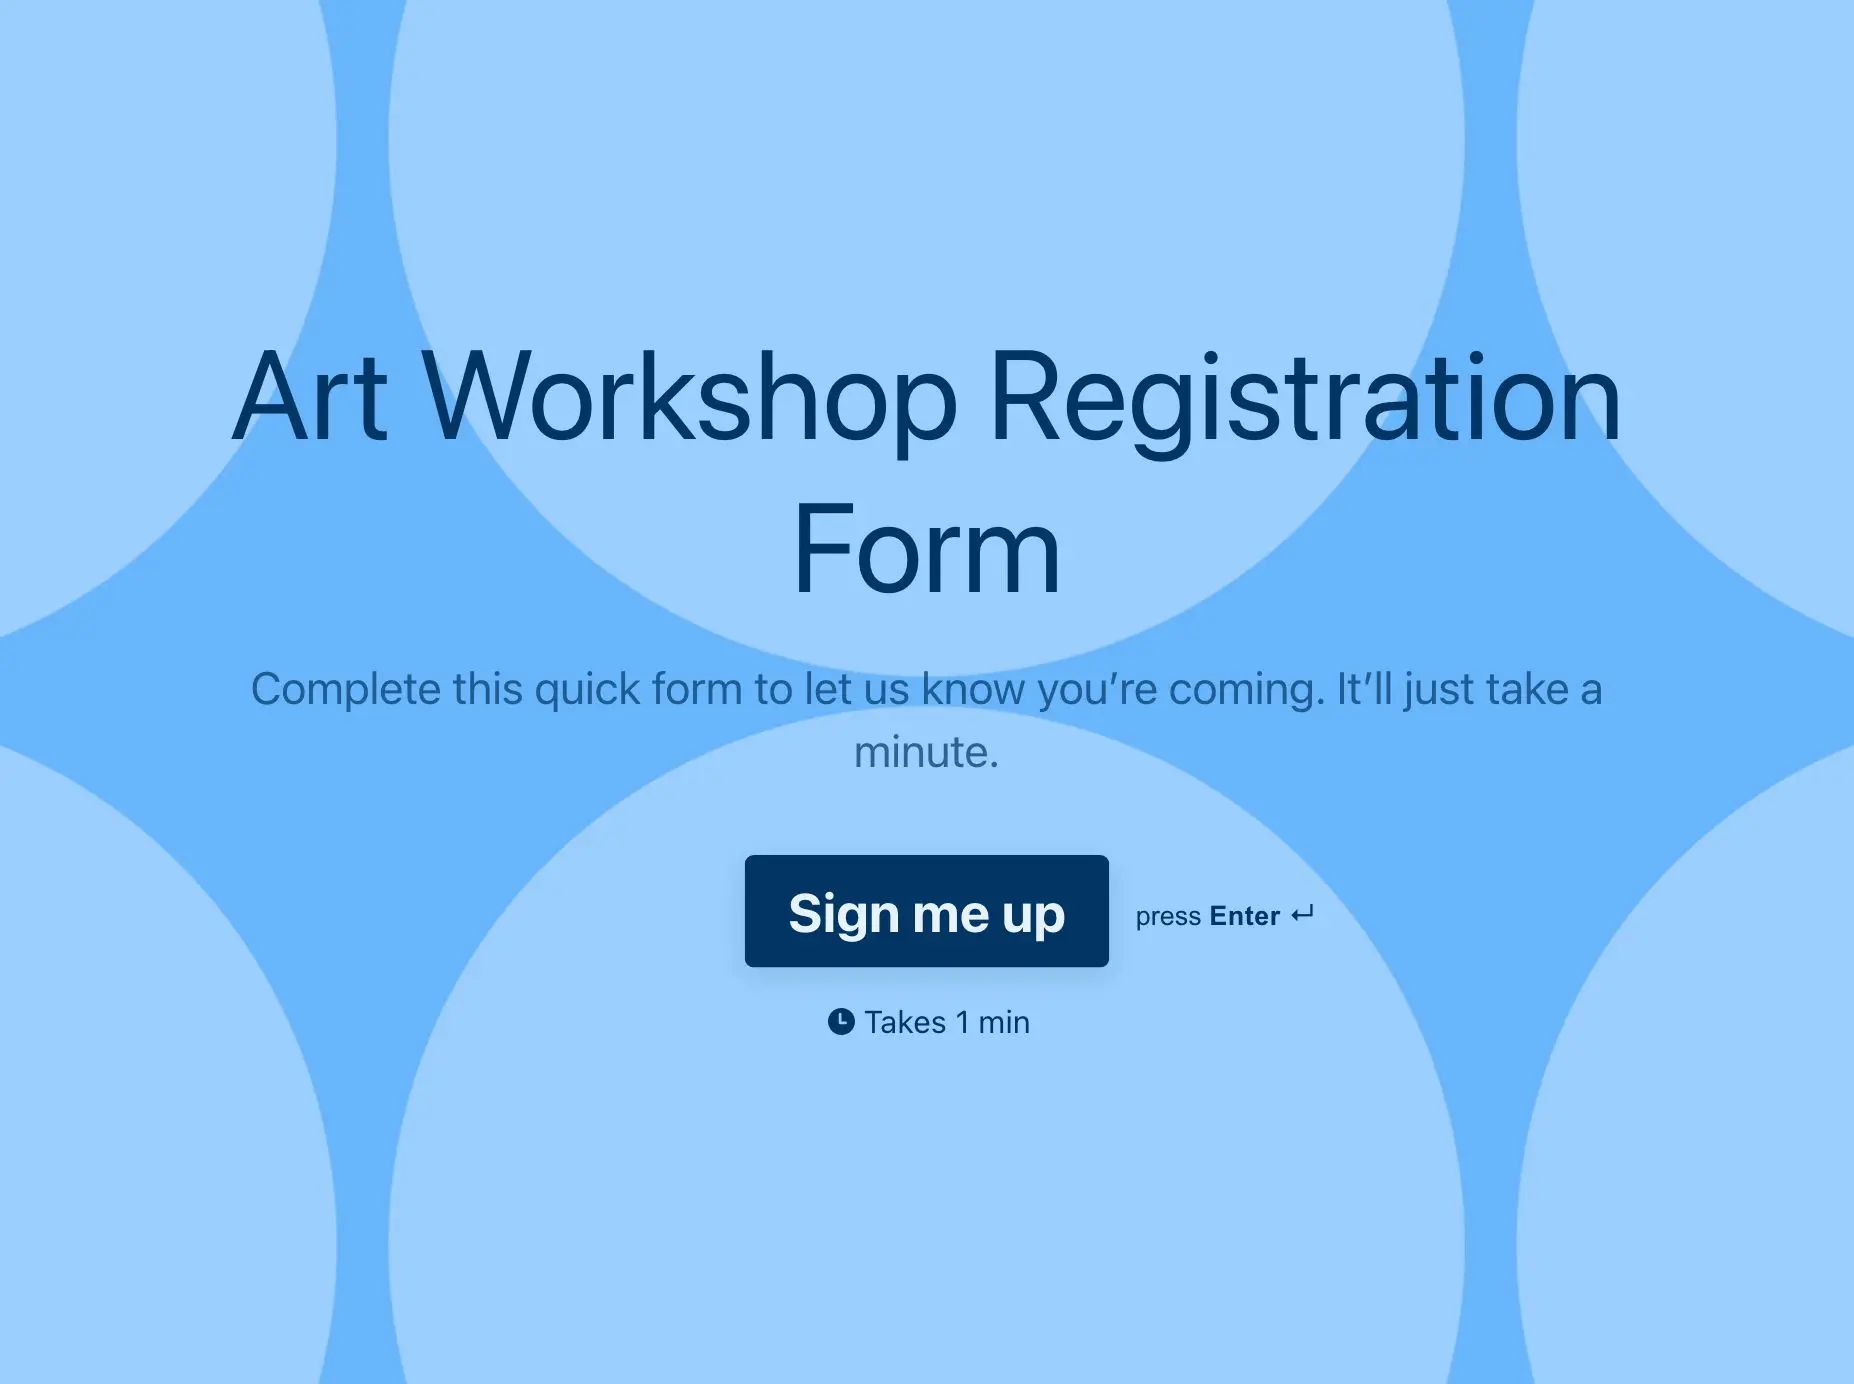 Art Workshop Registration Form Template Hero